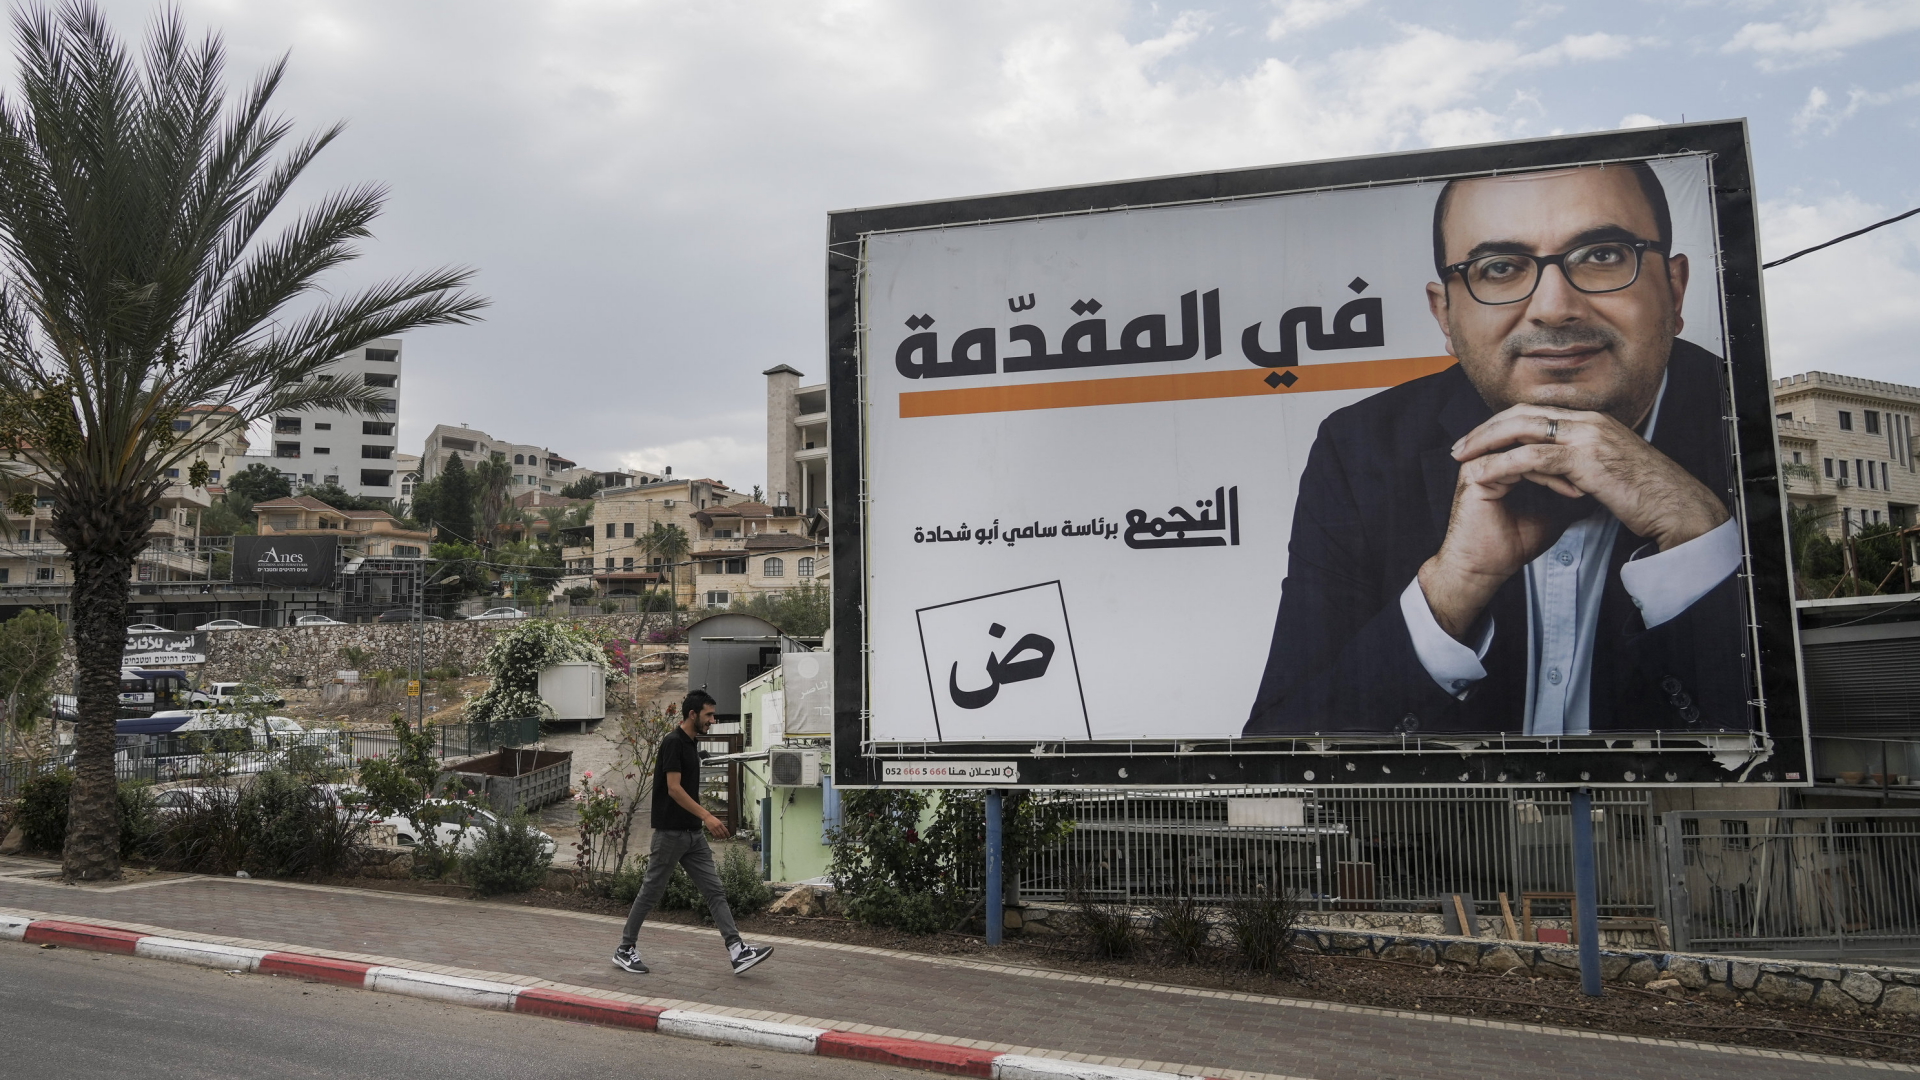 Ein Wahlplakat für die Balad-Partei in Israel | AP